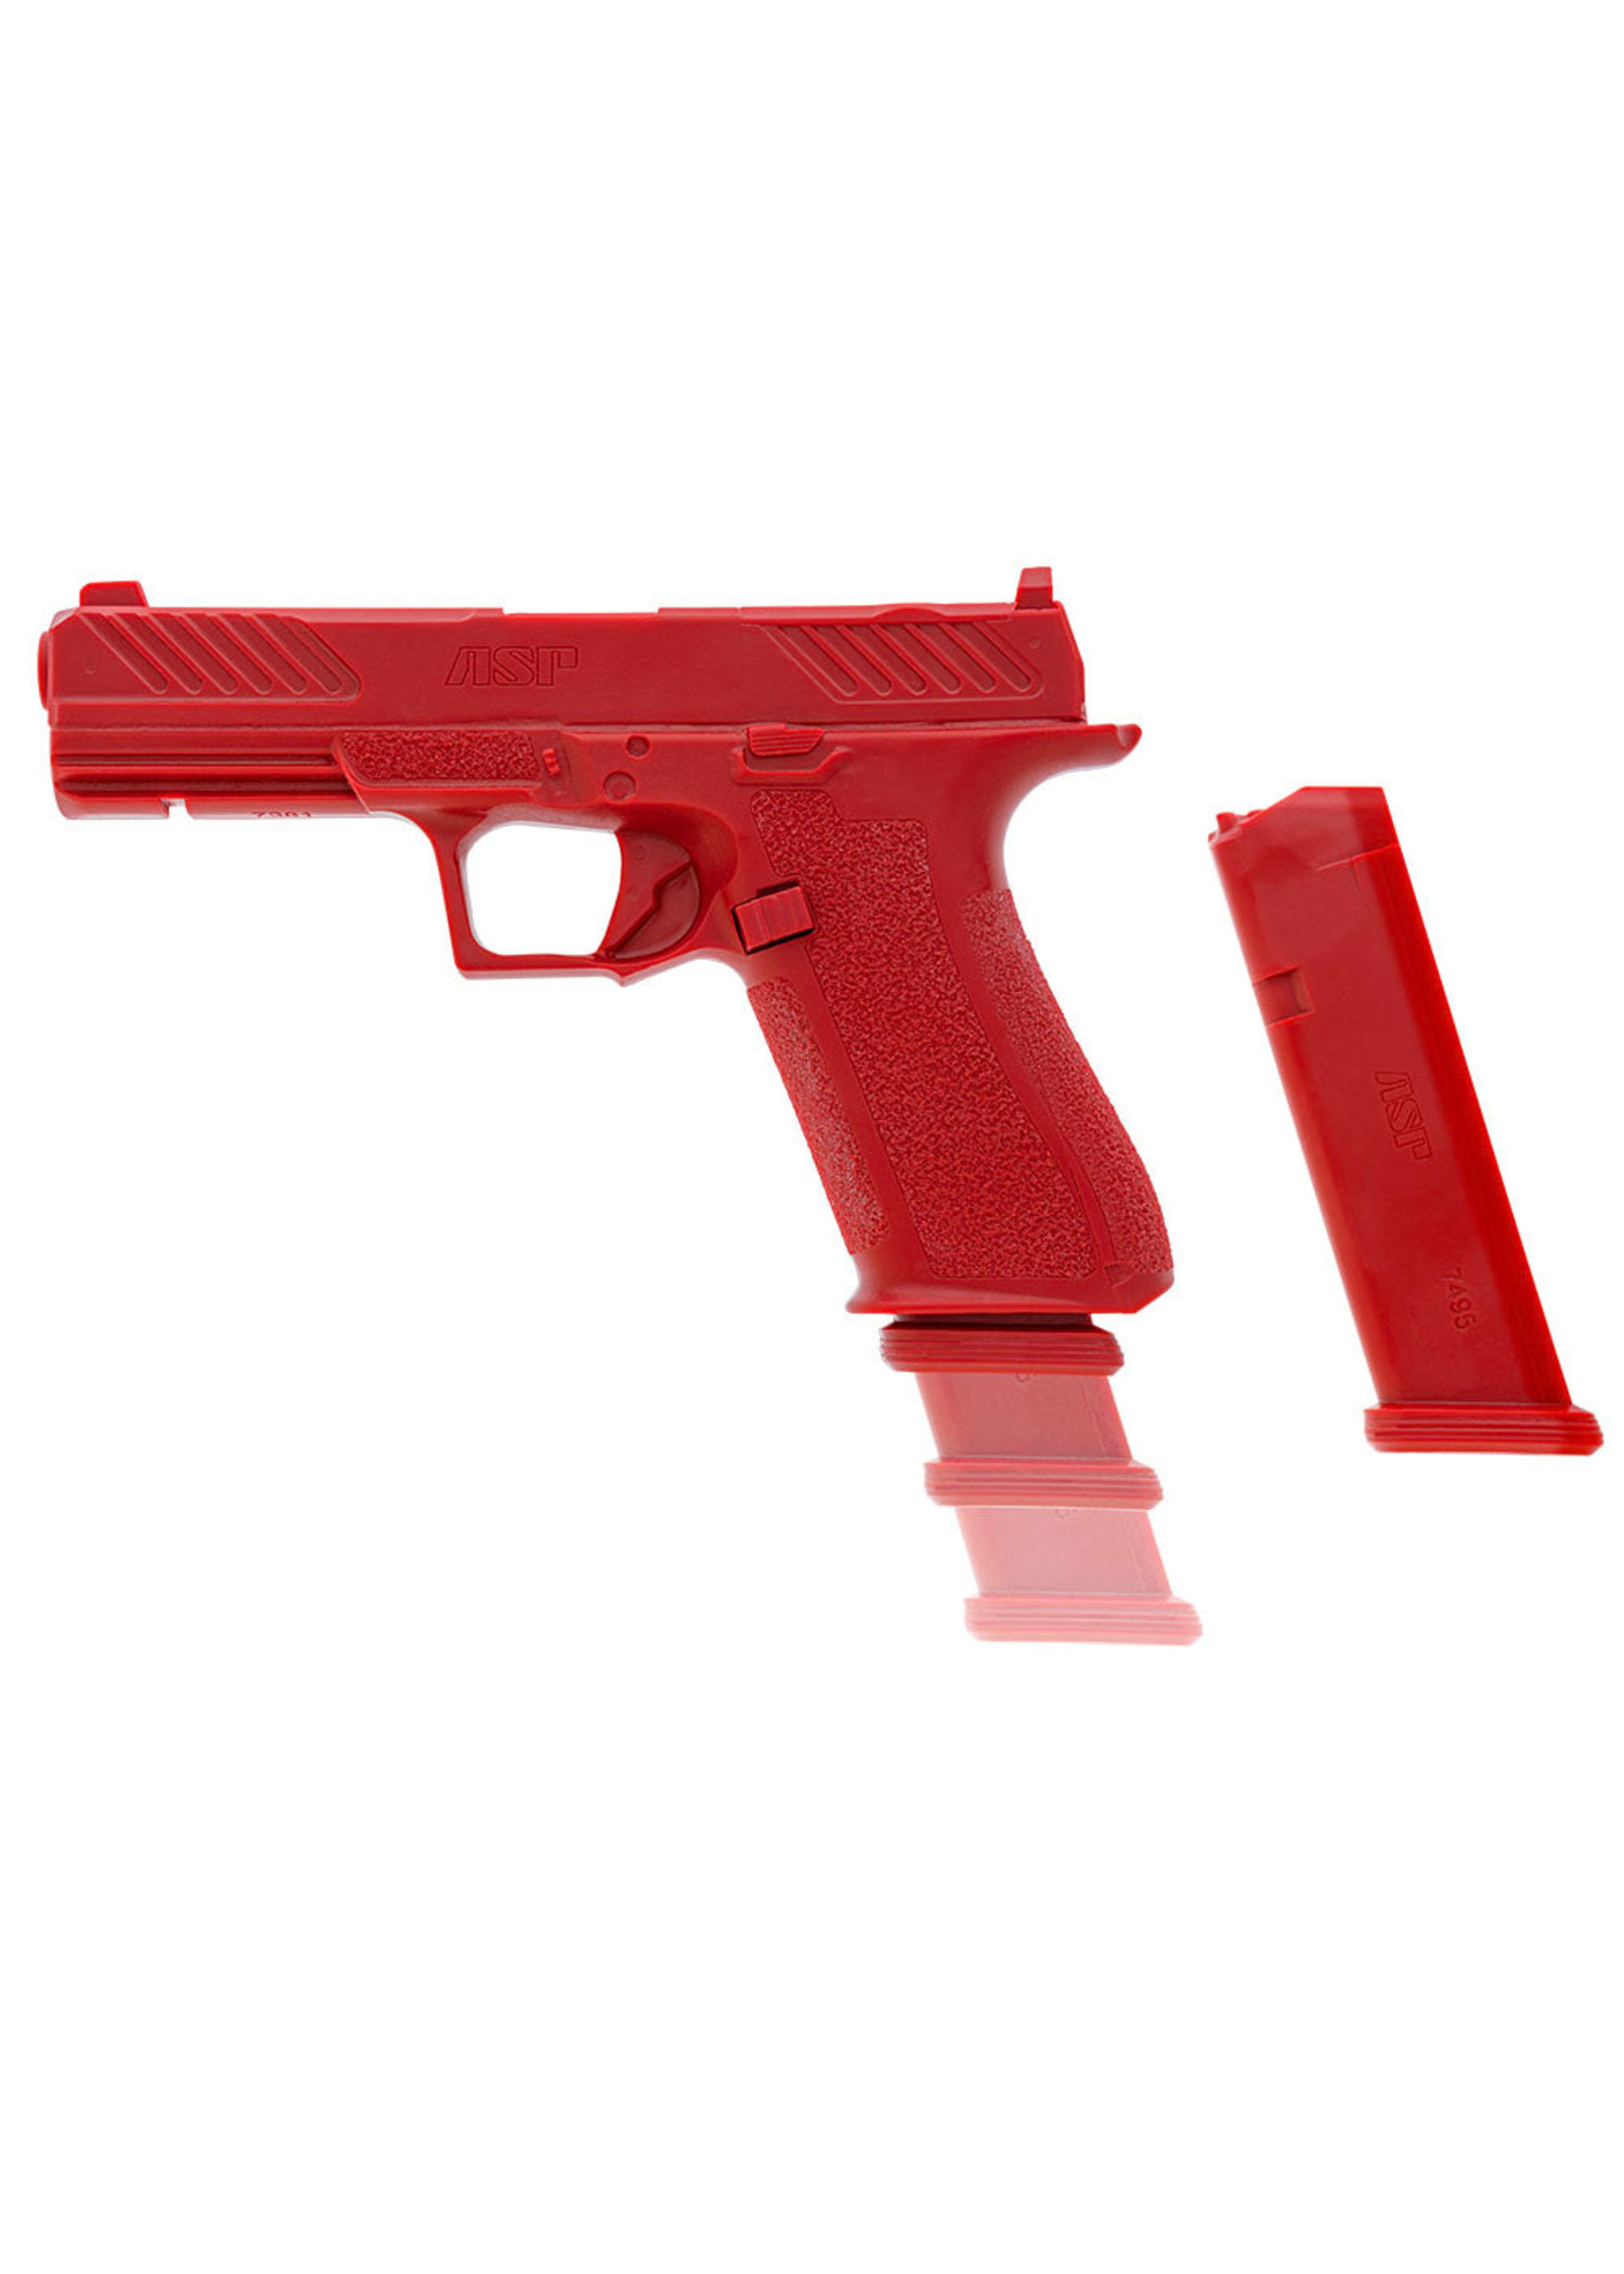 ARMAMENT SYSTEMS & PROCEDURES (ASP) ENHANCED RED GUNS